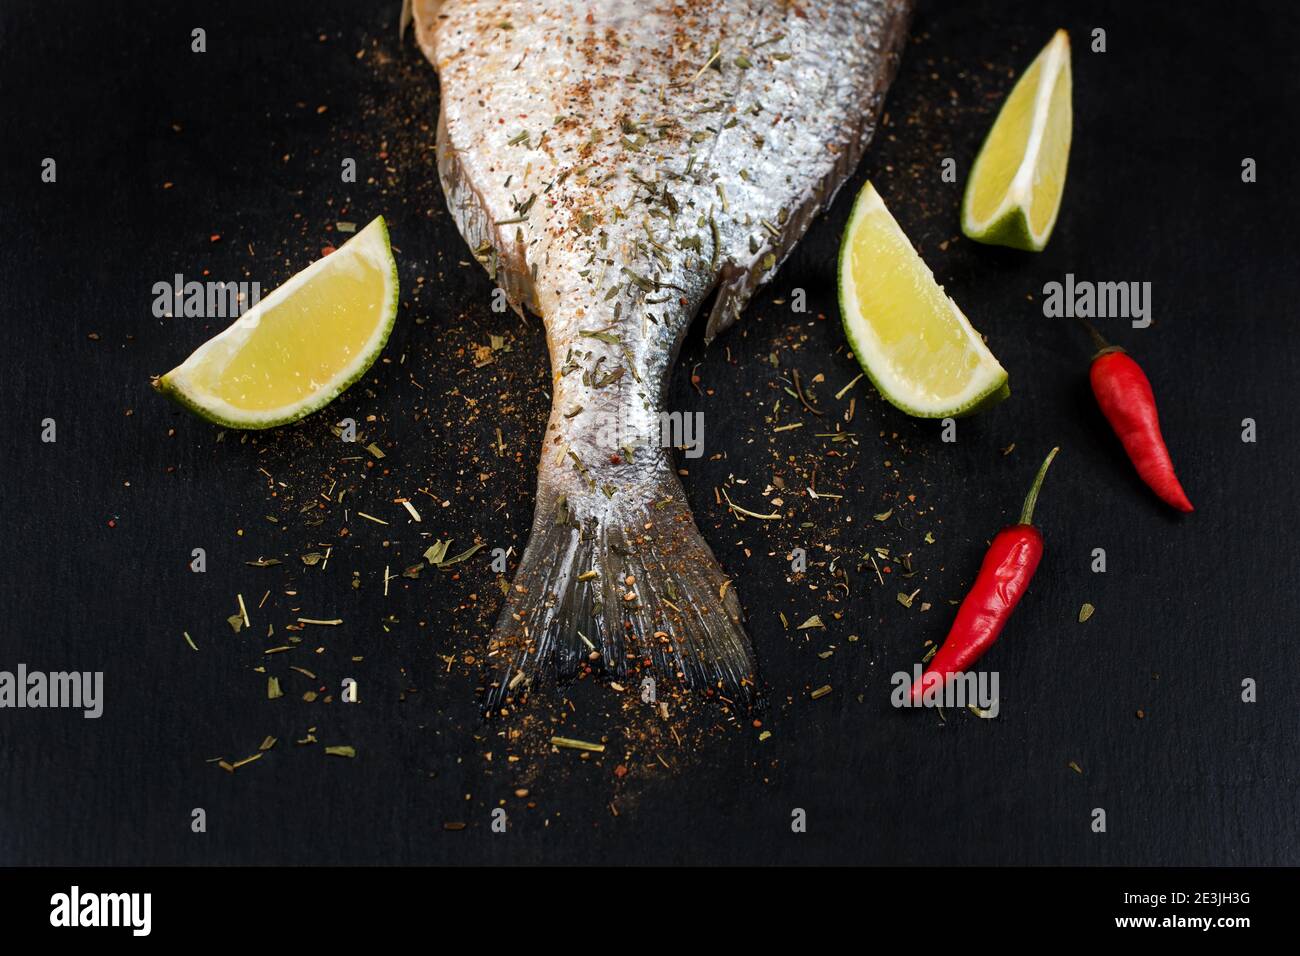 Schwanz aus frischem rohem dorado auf schwarzem Schiefersteinbrett mit Gewürzen, Kräutern, Zitrone und rotem Paprika. Brassen Fisch bereit zum Kochen. Draufsicht. Stockfoto